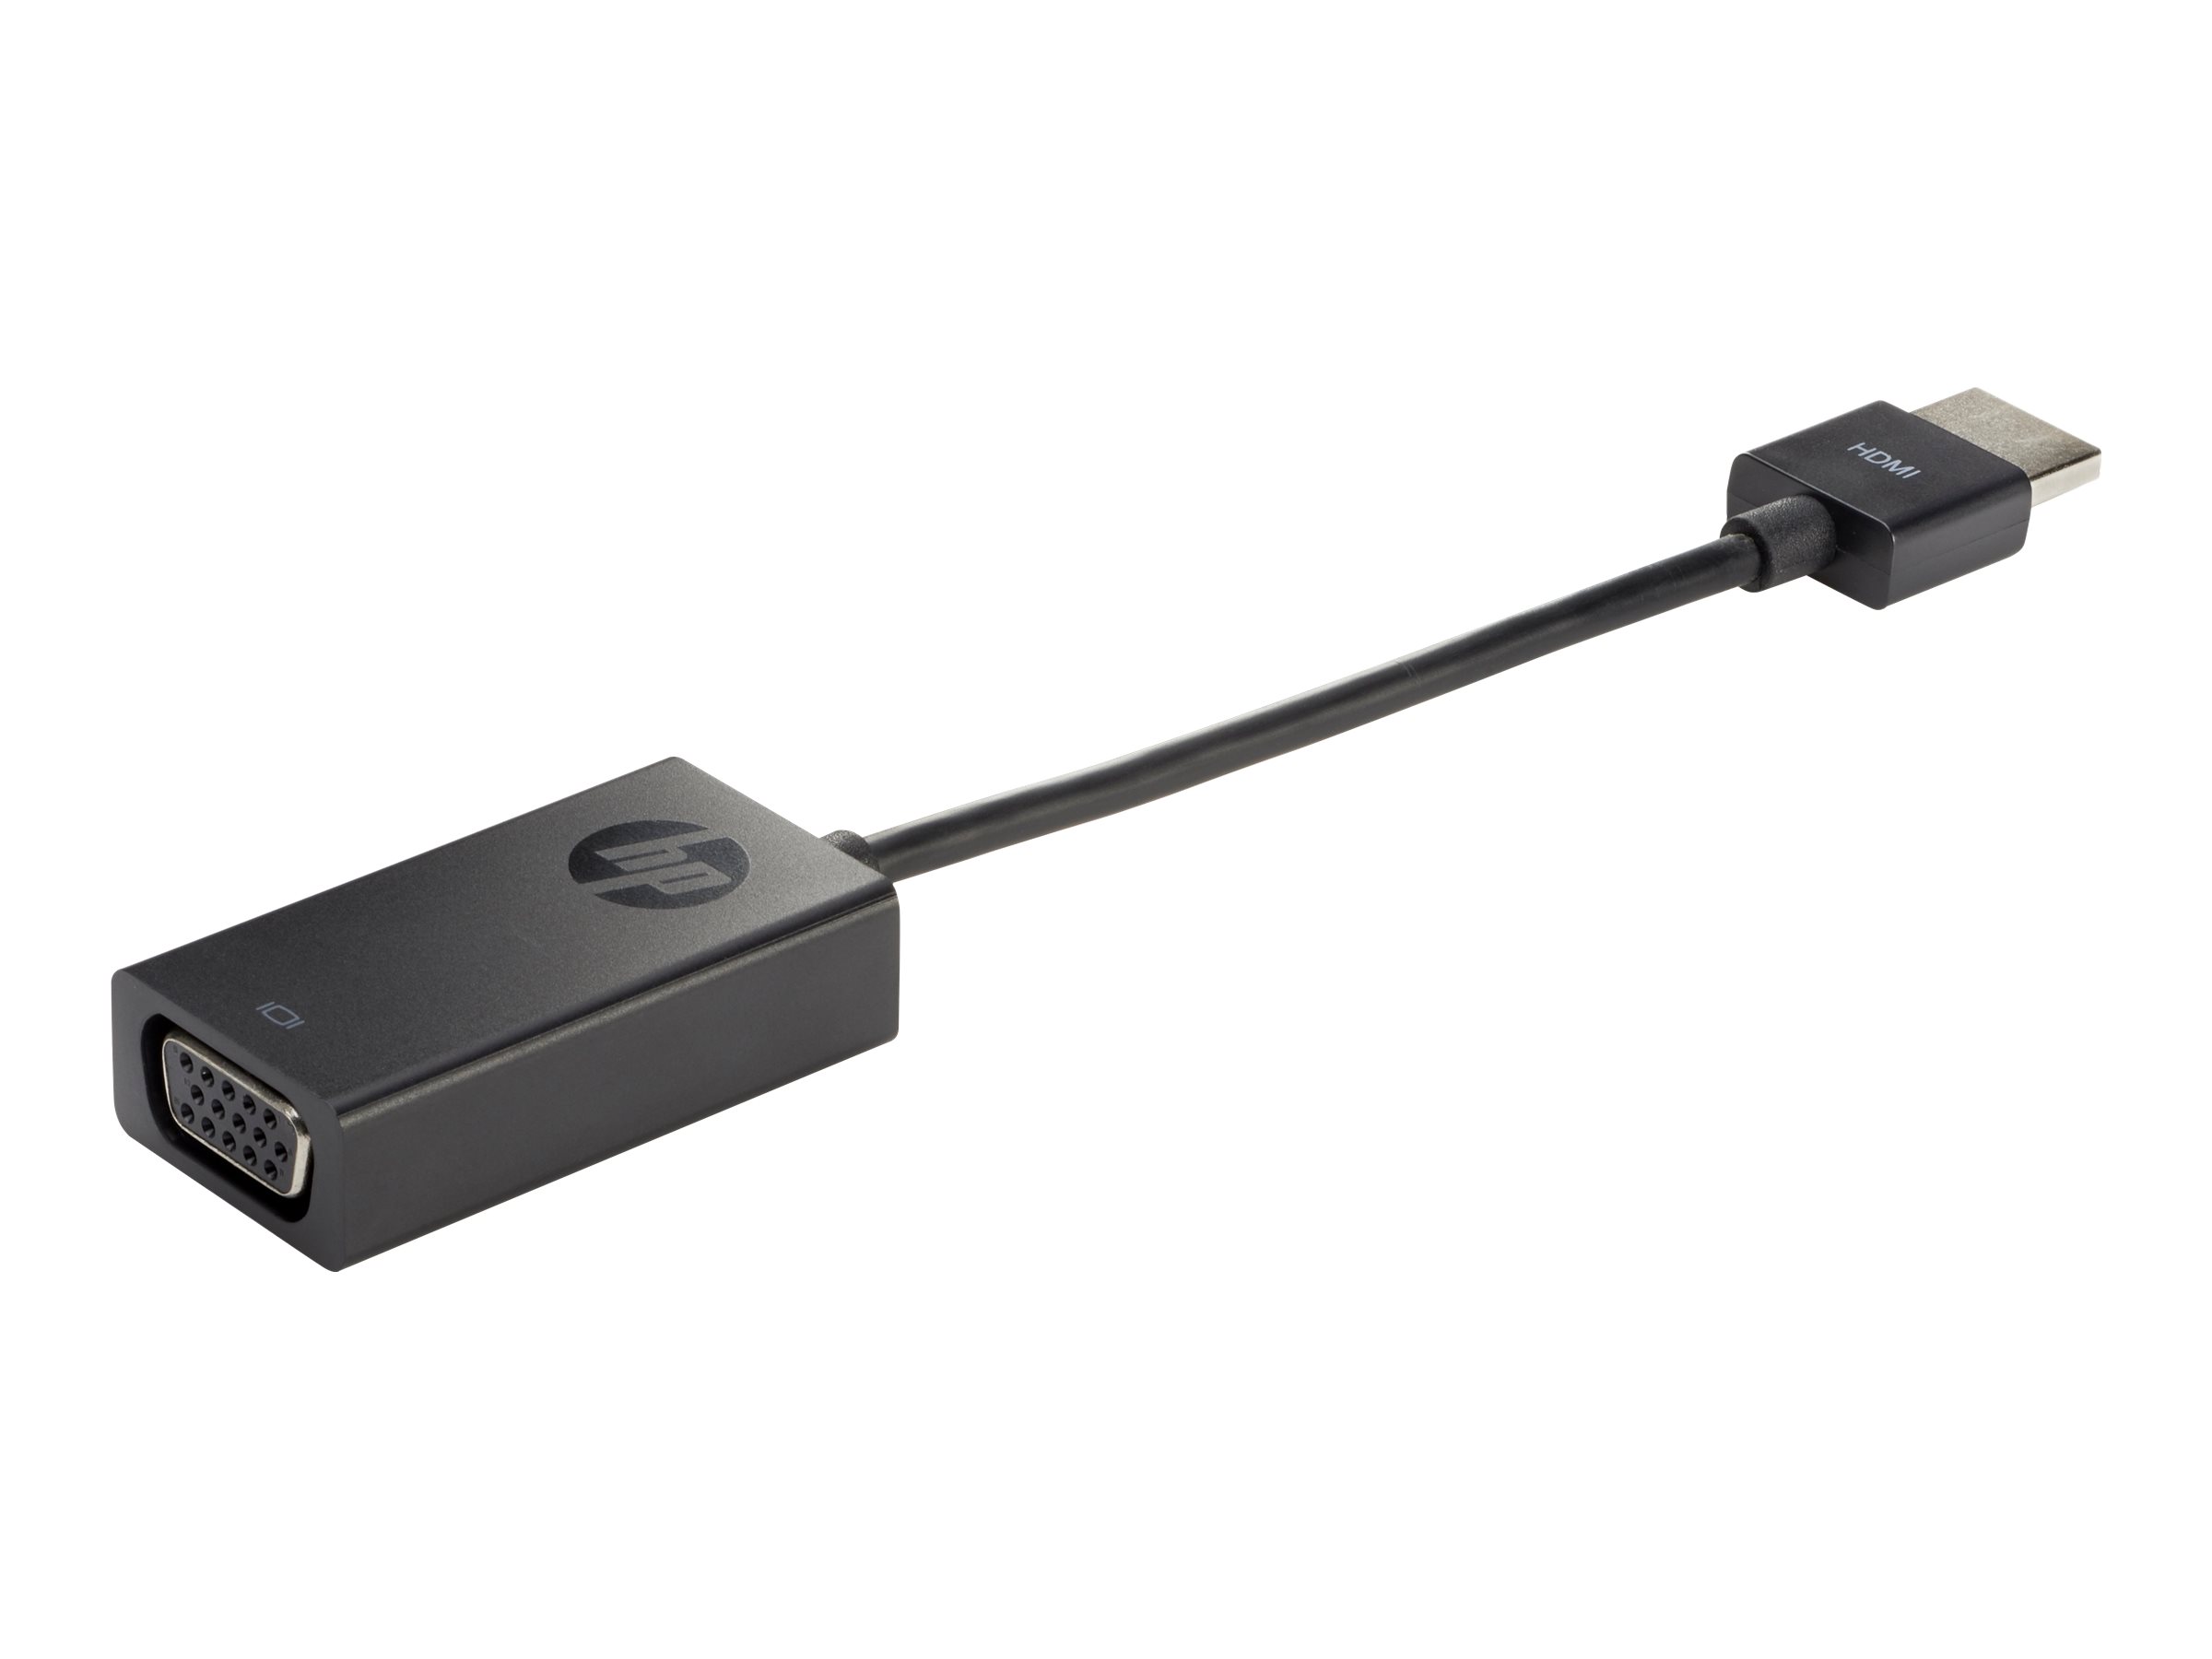 HP HDMI to VGA Display Adapter - Adaptateur vidéo - HD-15 (VGA) femelle pour HDMI mâle - 17.3 cm - support 1080p - pour HP 20, 22, 24, 27; Pavilion Laptop 13, 14, 15, 17; Portable 24, 27, 590, 595 - X1B84AA#ABB - Accessoires pour téléviseurs